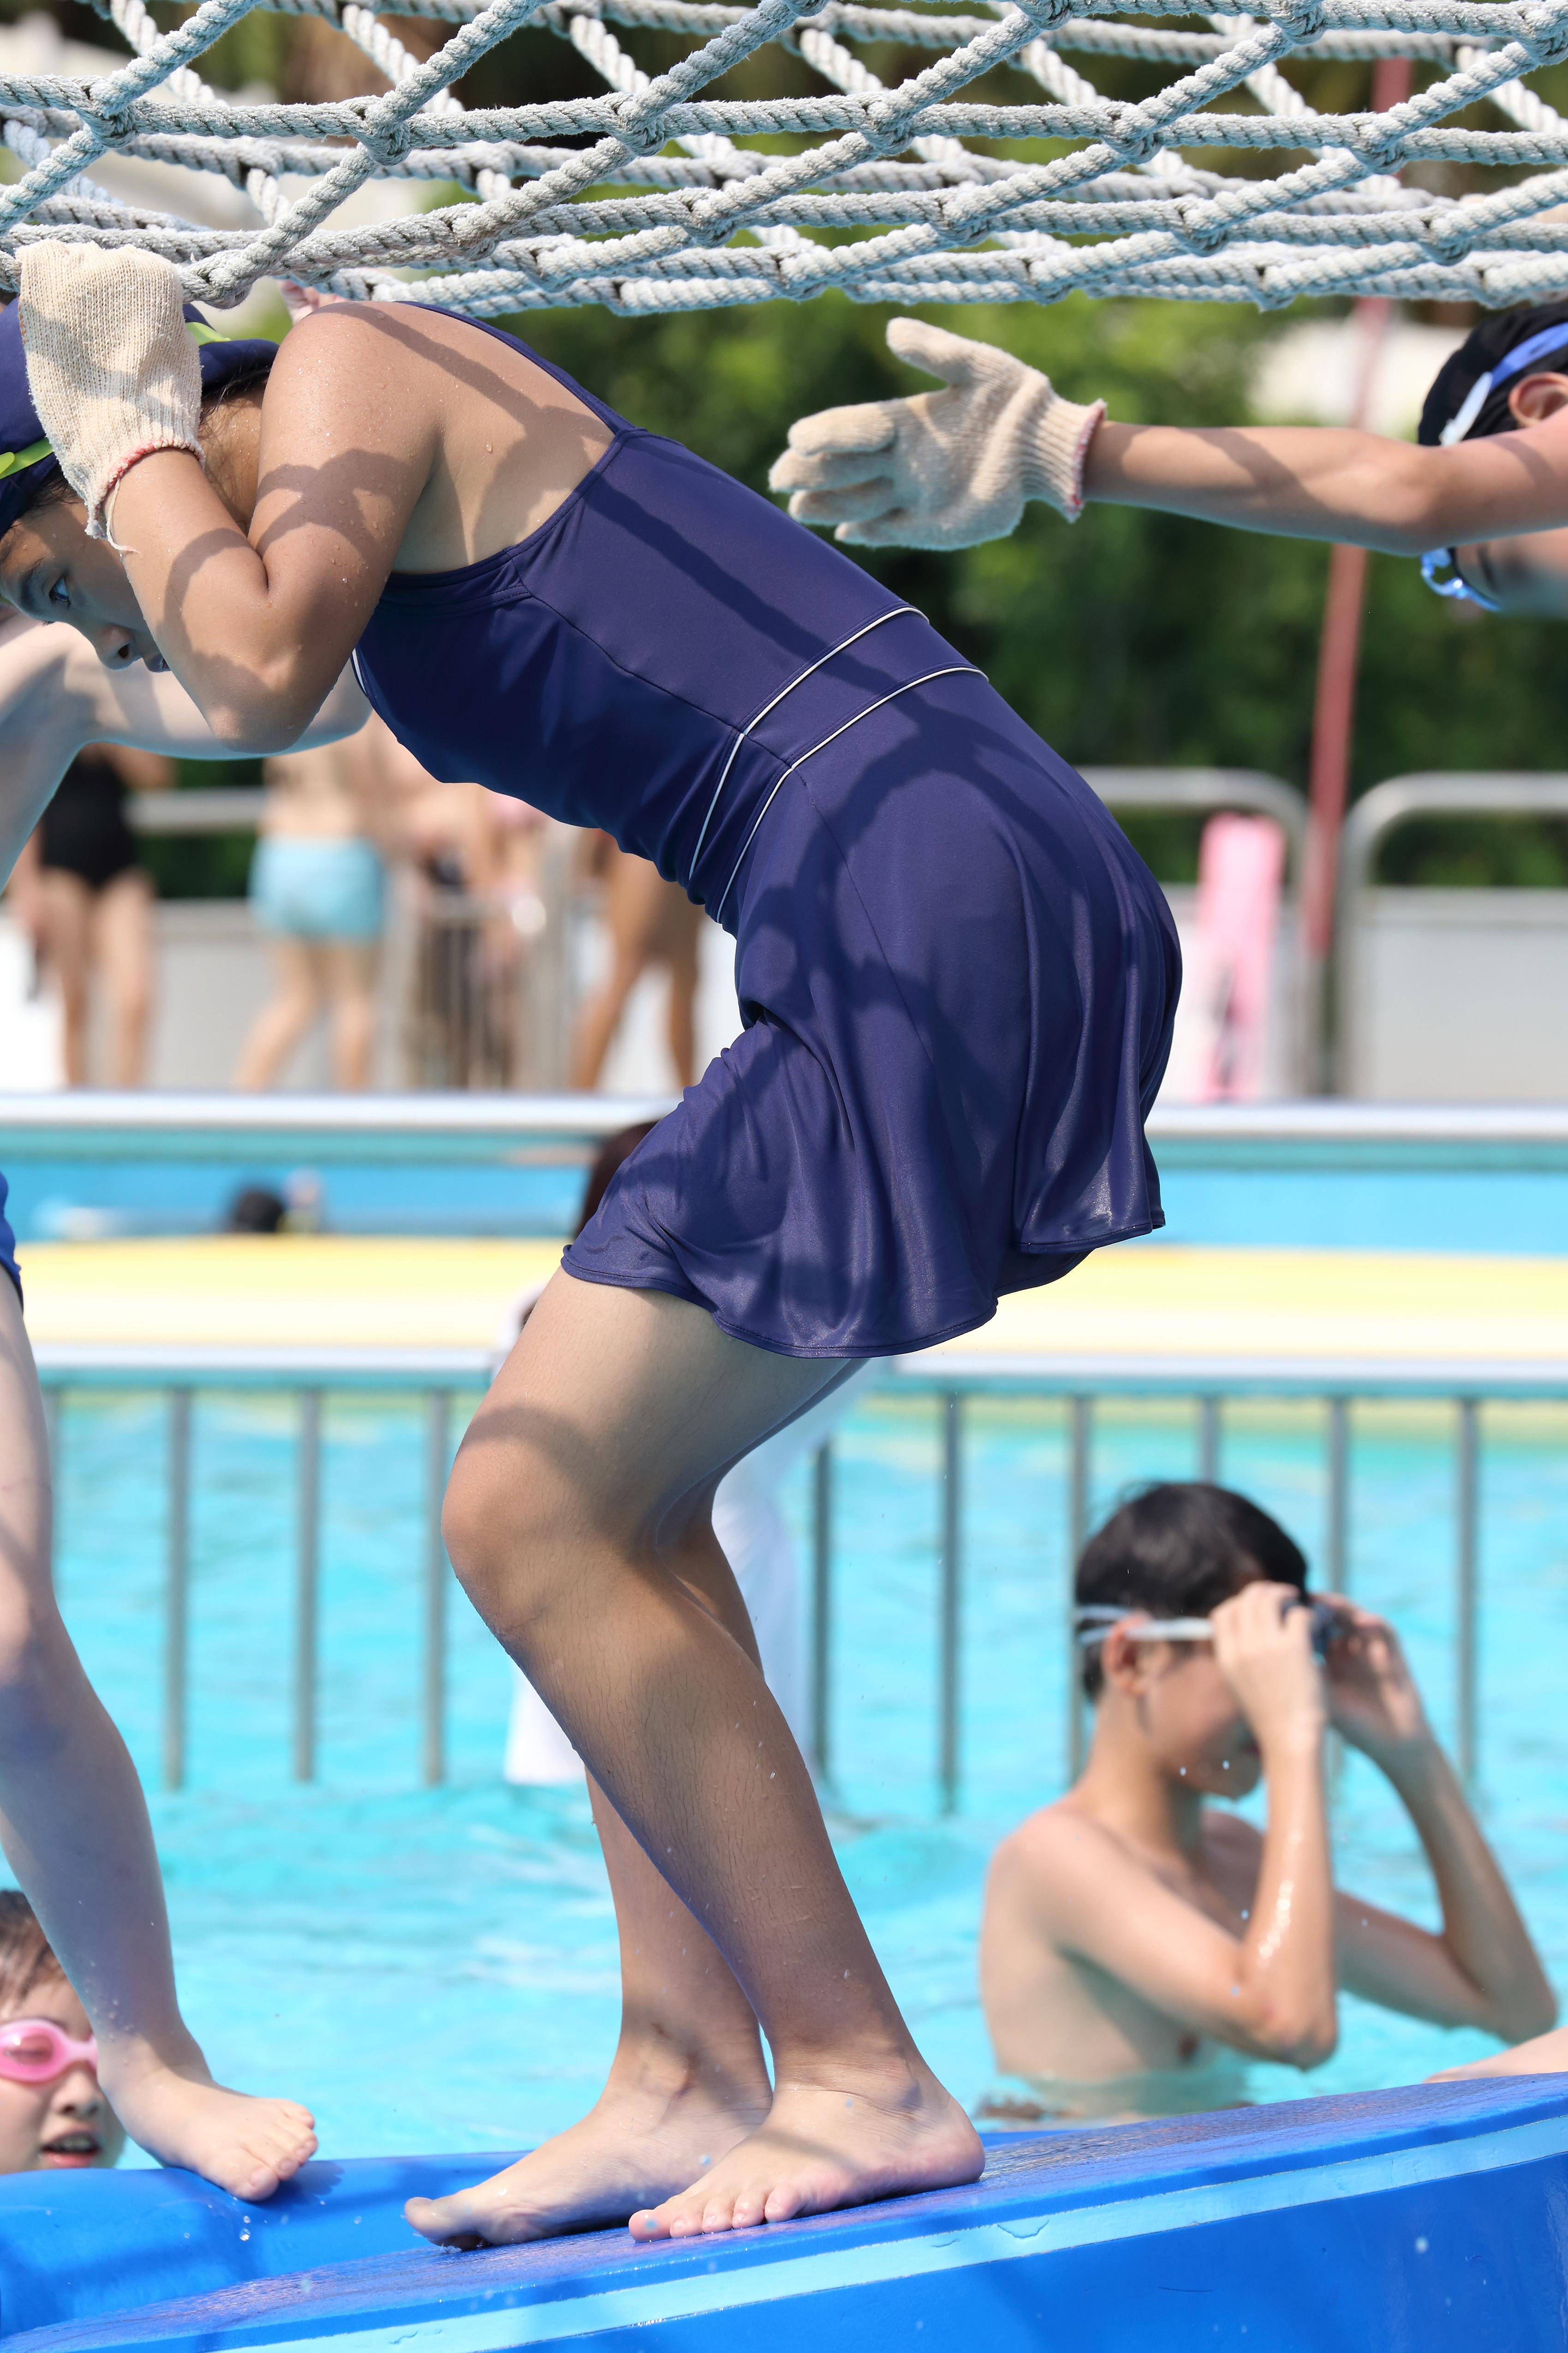 SWIM_26 JK Swimsuit image ap20, [Фото] Купальник с высокими штанинами vol.1, который цепляется за стройные ножки и завораживающие бедра 232 изображения высокого качества!